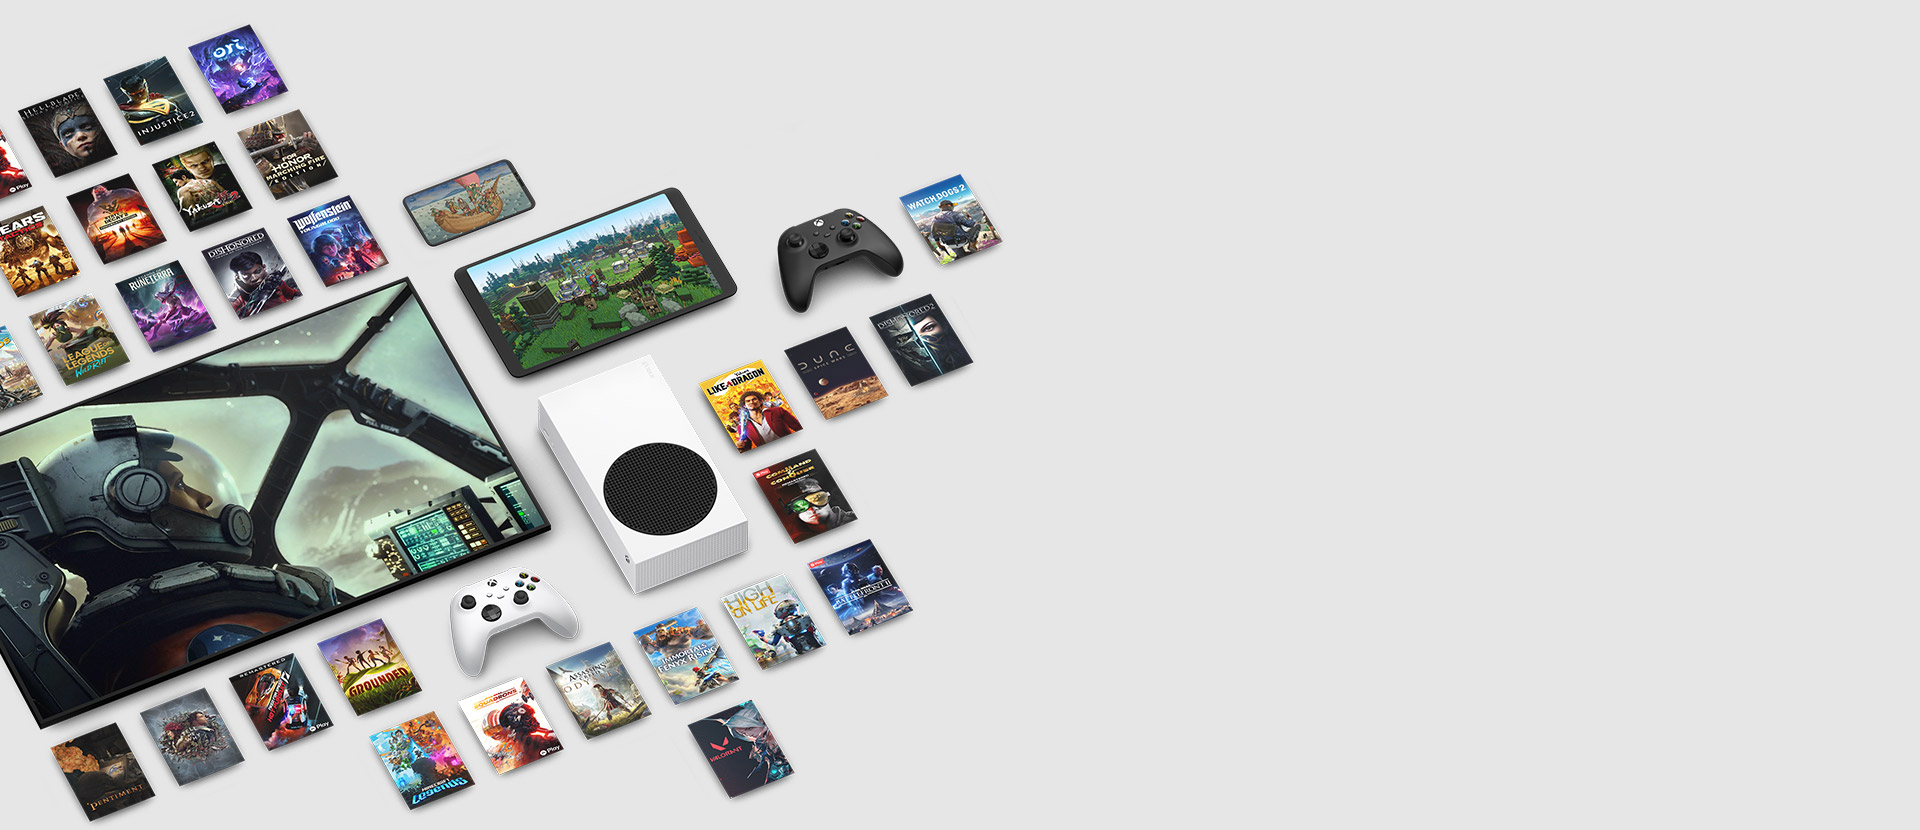 Una grafica di più giochi ora disponibili con Xbox Game Pass Ultimate circonda molti dispositivi, tra cui una console, un cellulare, un tablet, una smart TV e controller.